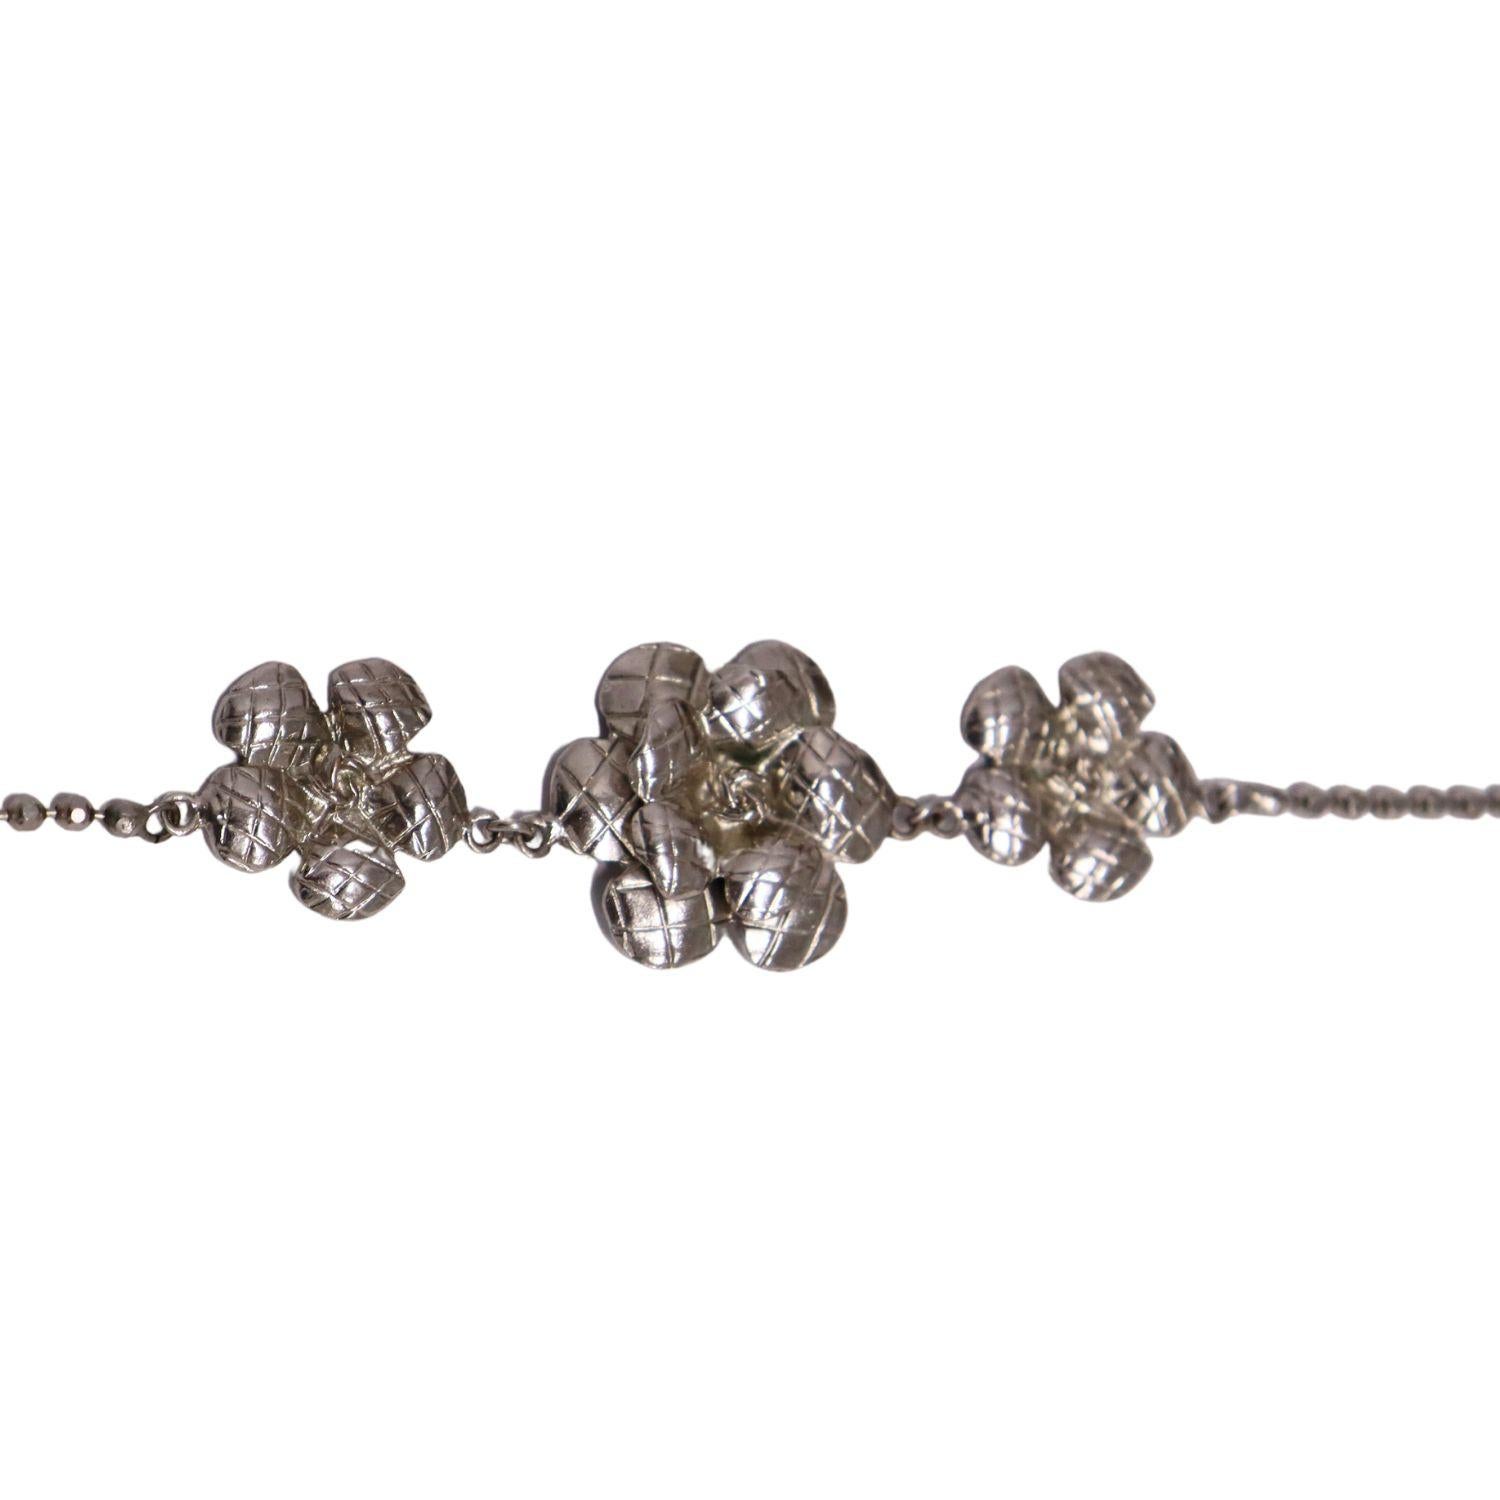 Chanel Kettenhalsband mit drei silbernen Blumendetails

Farbe: Silber
MATERIAL: Metall
Große Kamelie Größe: 3cm X 3cm
Kleine Kamelie Größe: 2cm X 2cm
Zusätzliche Informationen:
Zustand: Ausgezeichnet 